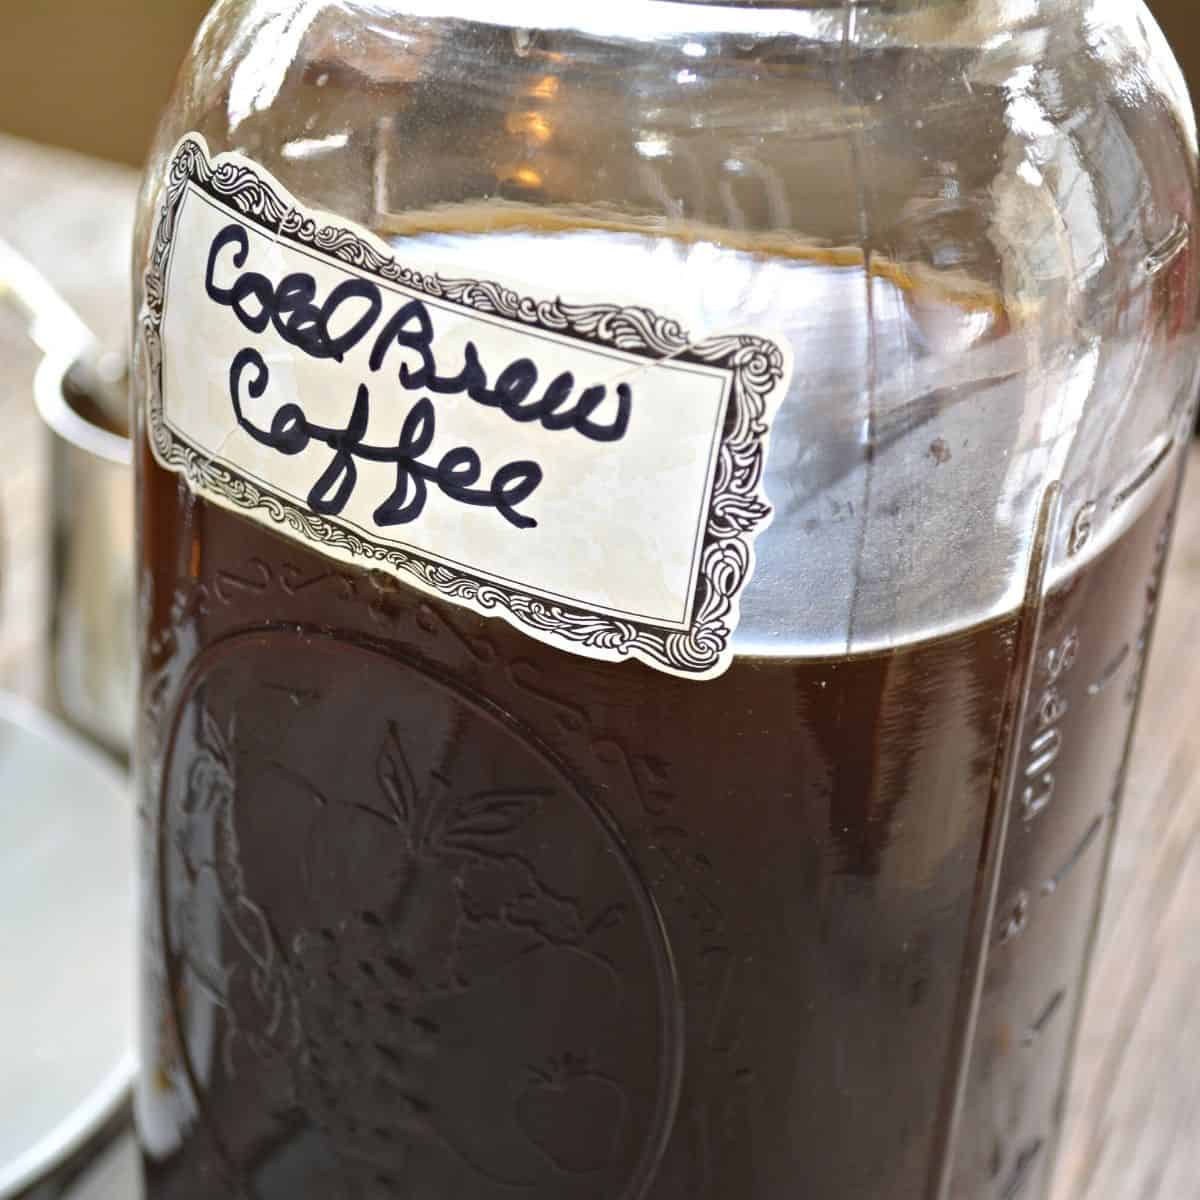 cold brew coffee in a jar - Sugar-Free & Keto Vanilla Sweet Cream Cold Brew: Ultimate Guide